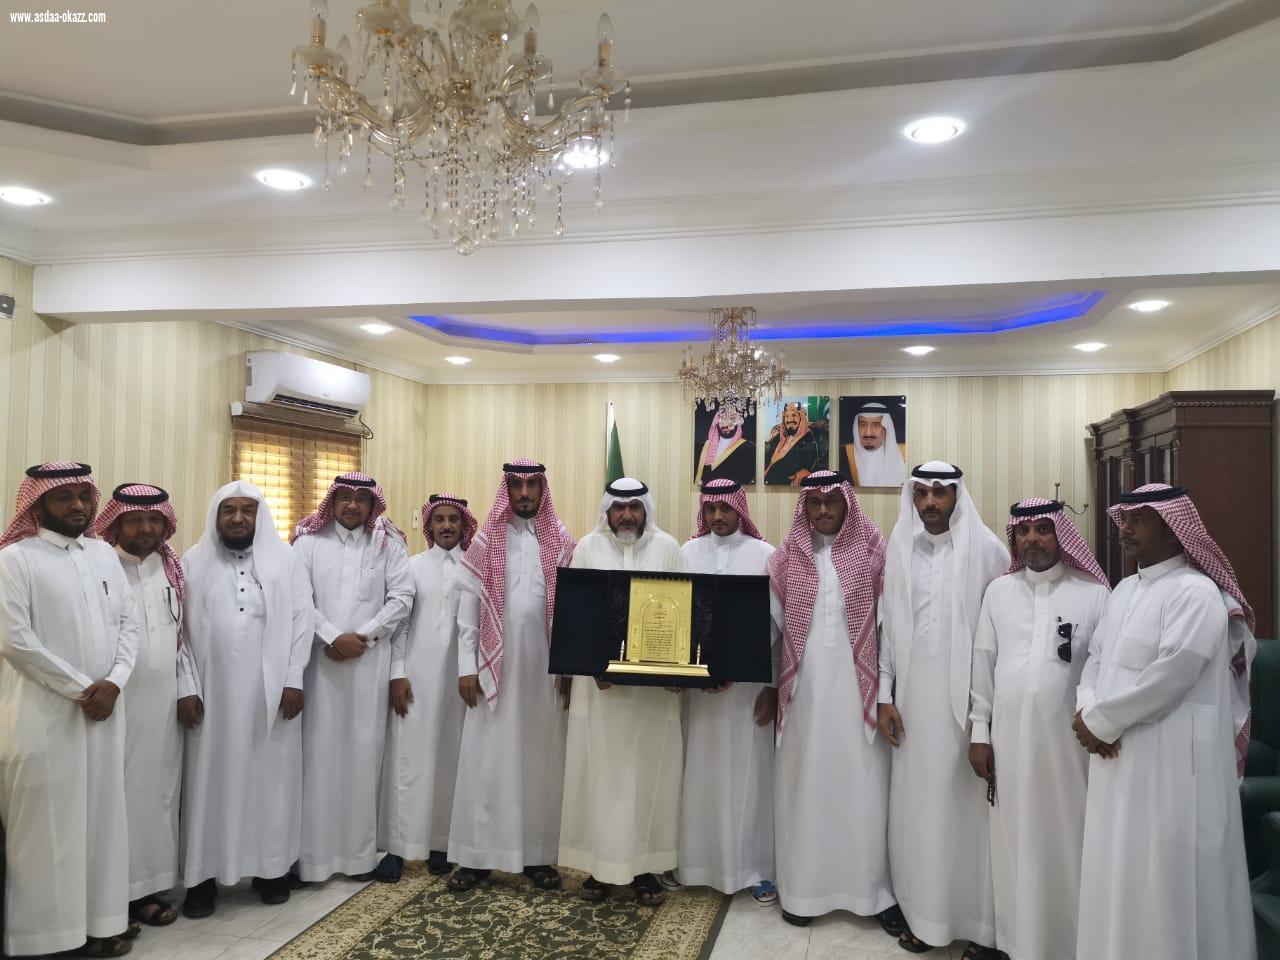 رئيس وأعضاء المجلس البلدي بمحافظة بيش يكرمون زميلهم النهاري